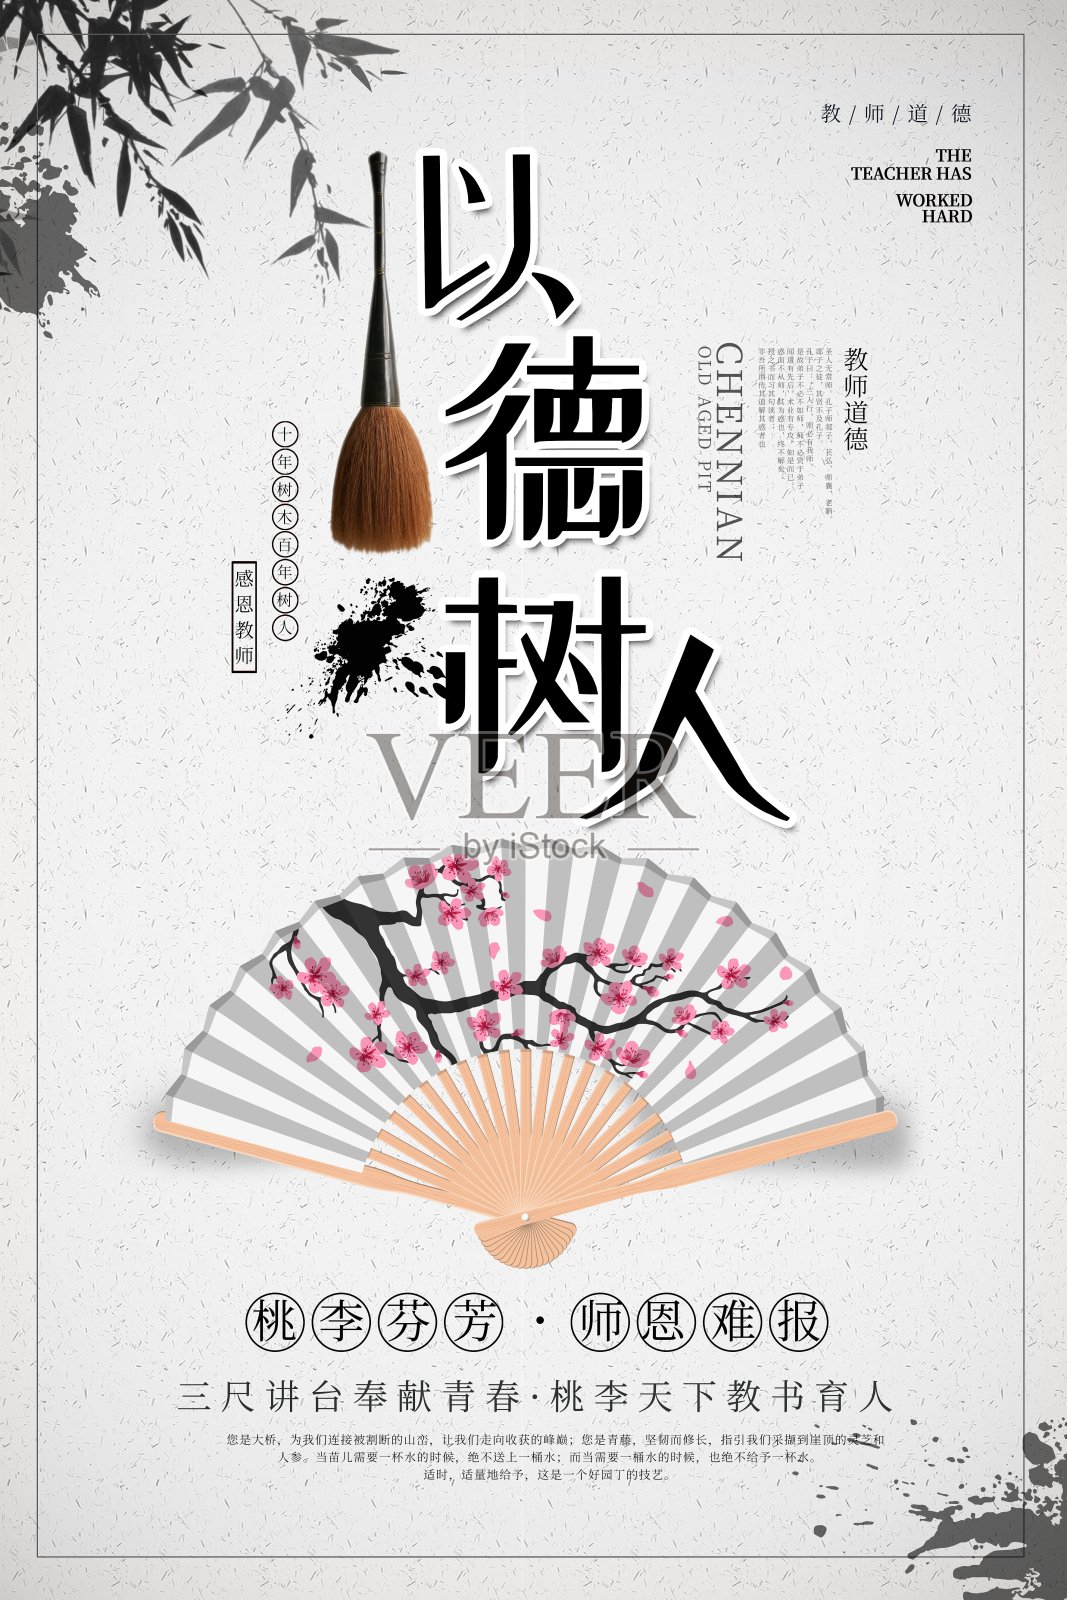 中国风以德树人教师节海报设计模板素材